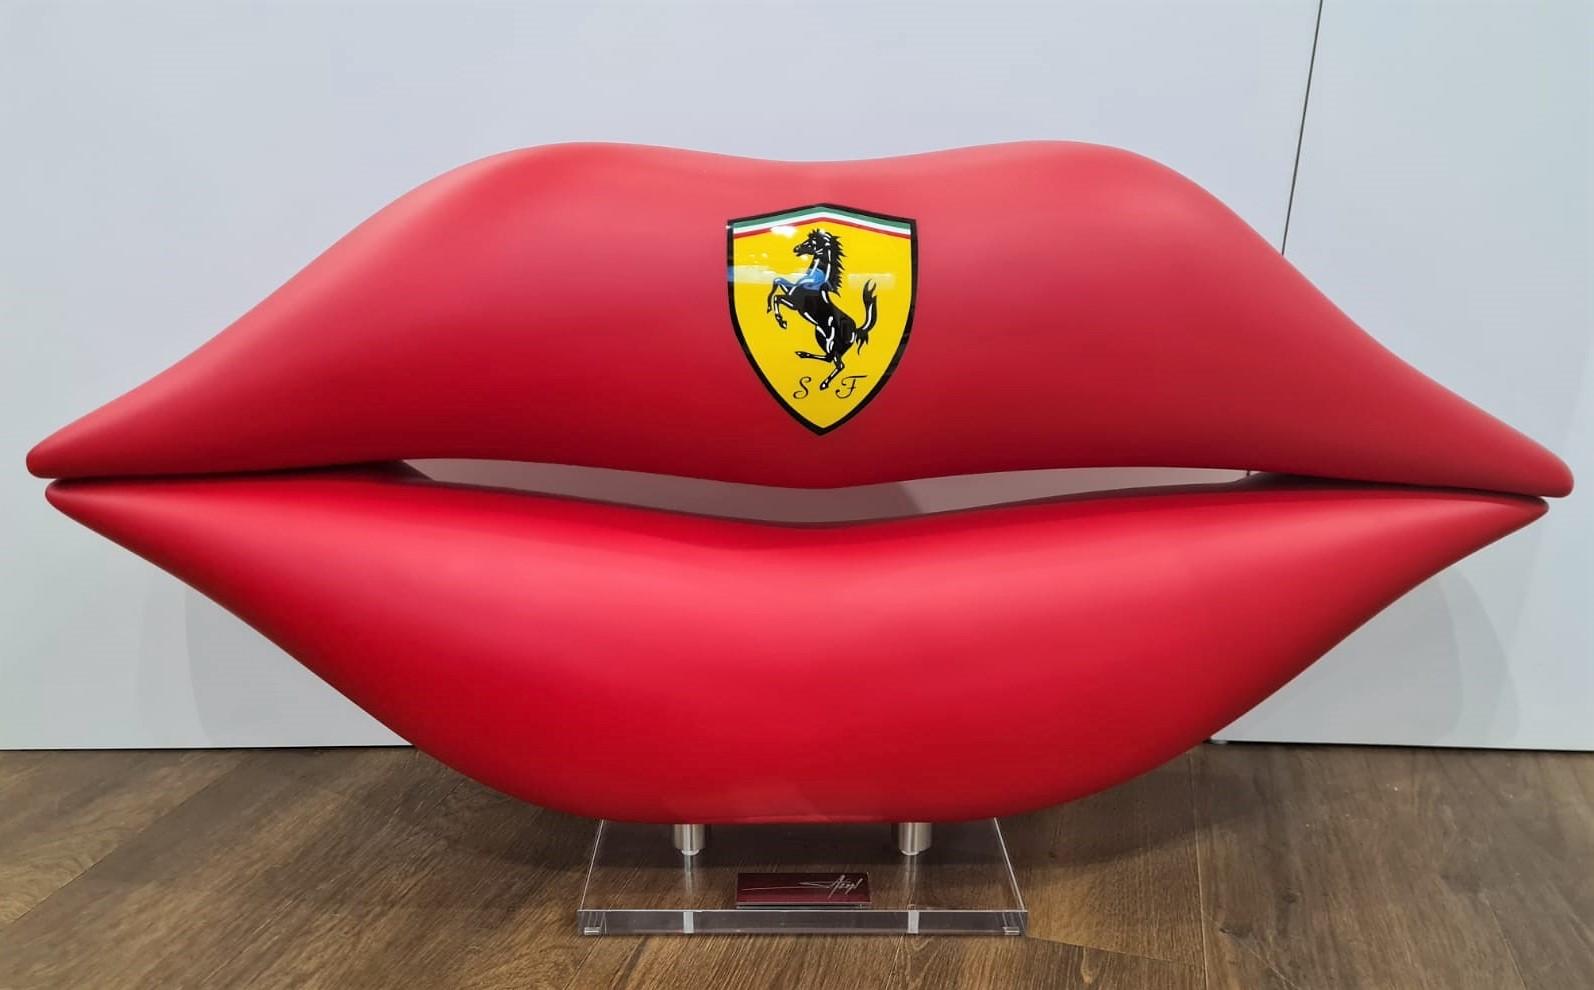 Erik Salin Abstract Sculpture - Ferrari Lips